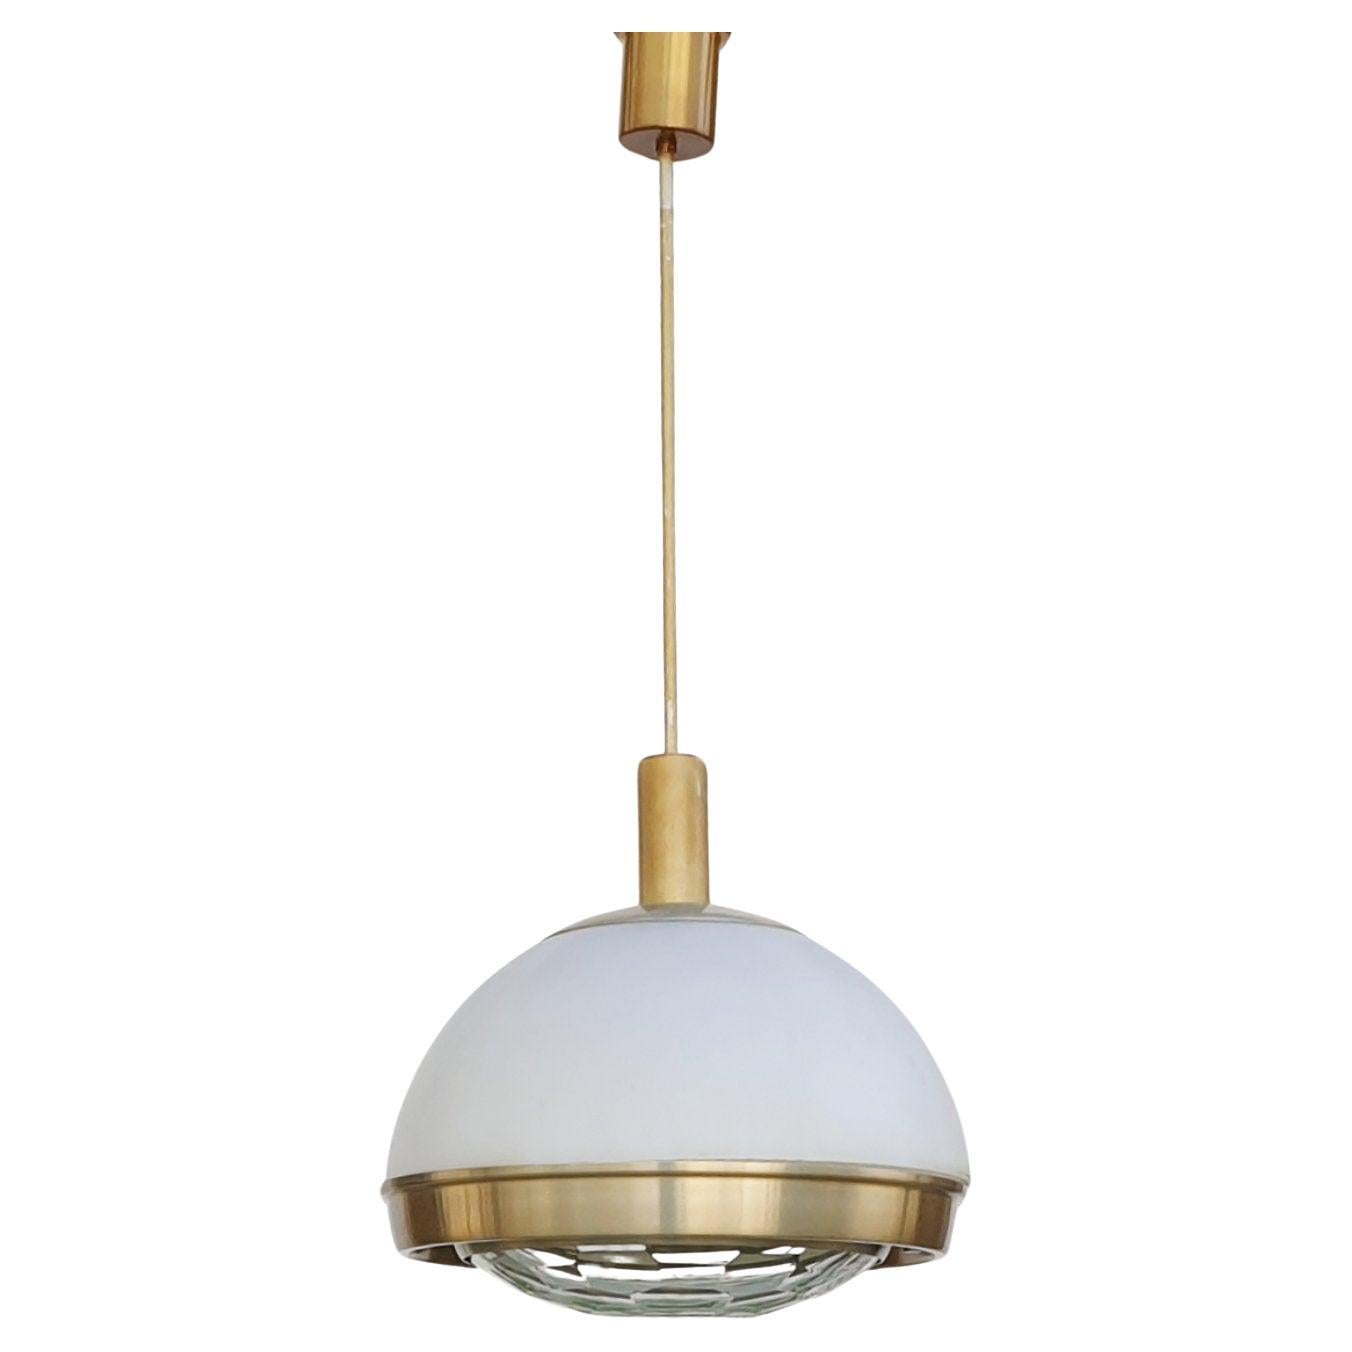 Italian Modern Pendant Lamp by Pia Giudetti Crippa for Lumi, Italy 60s